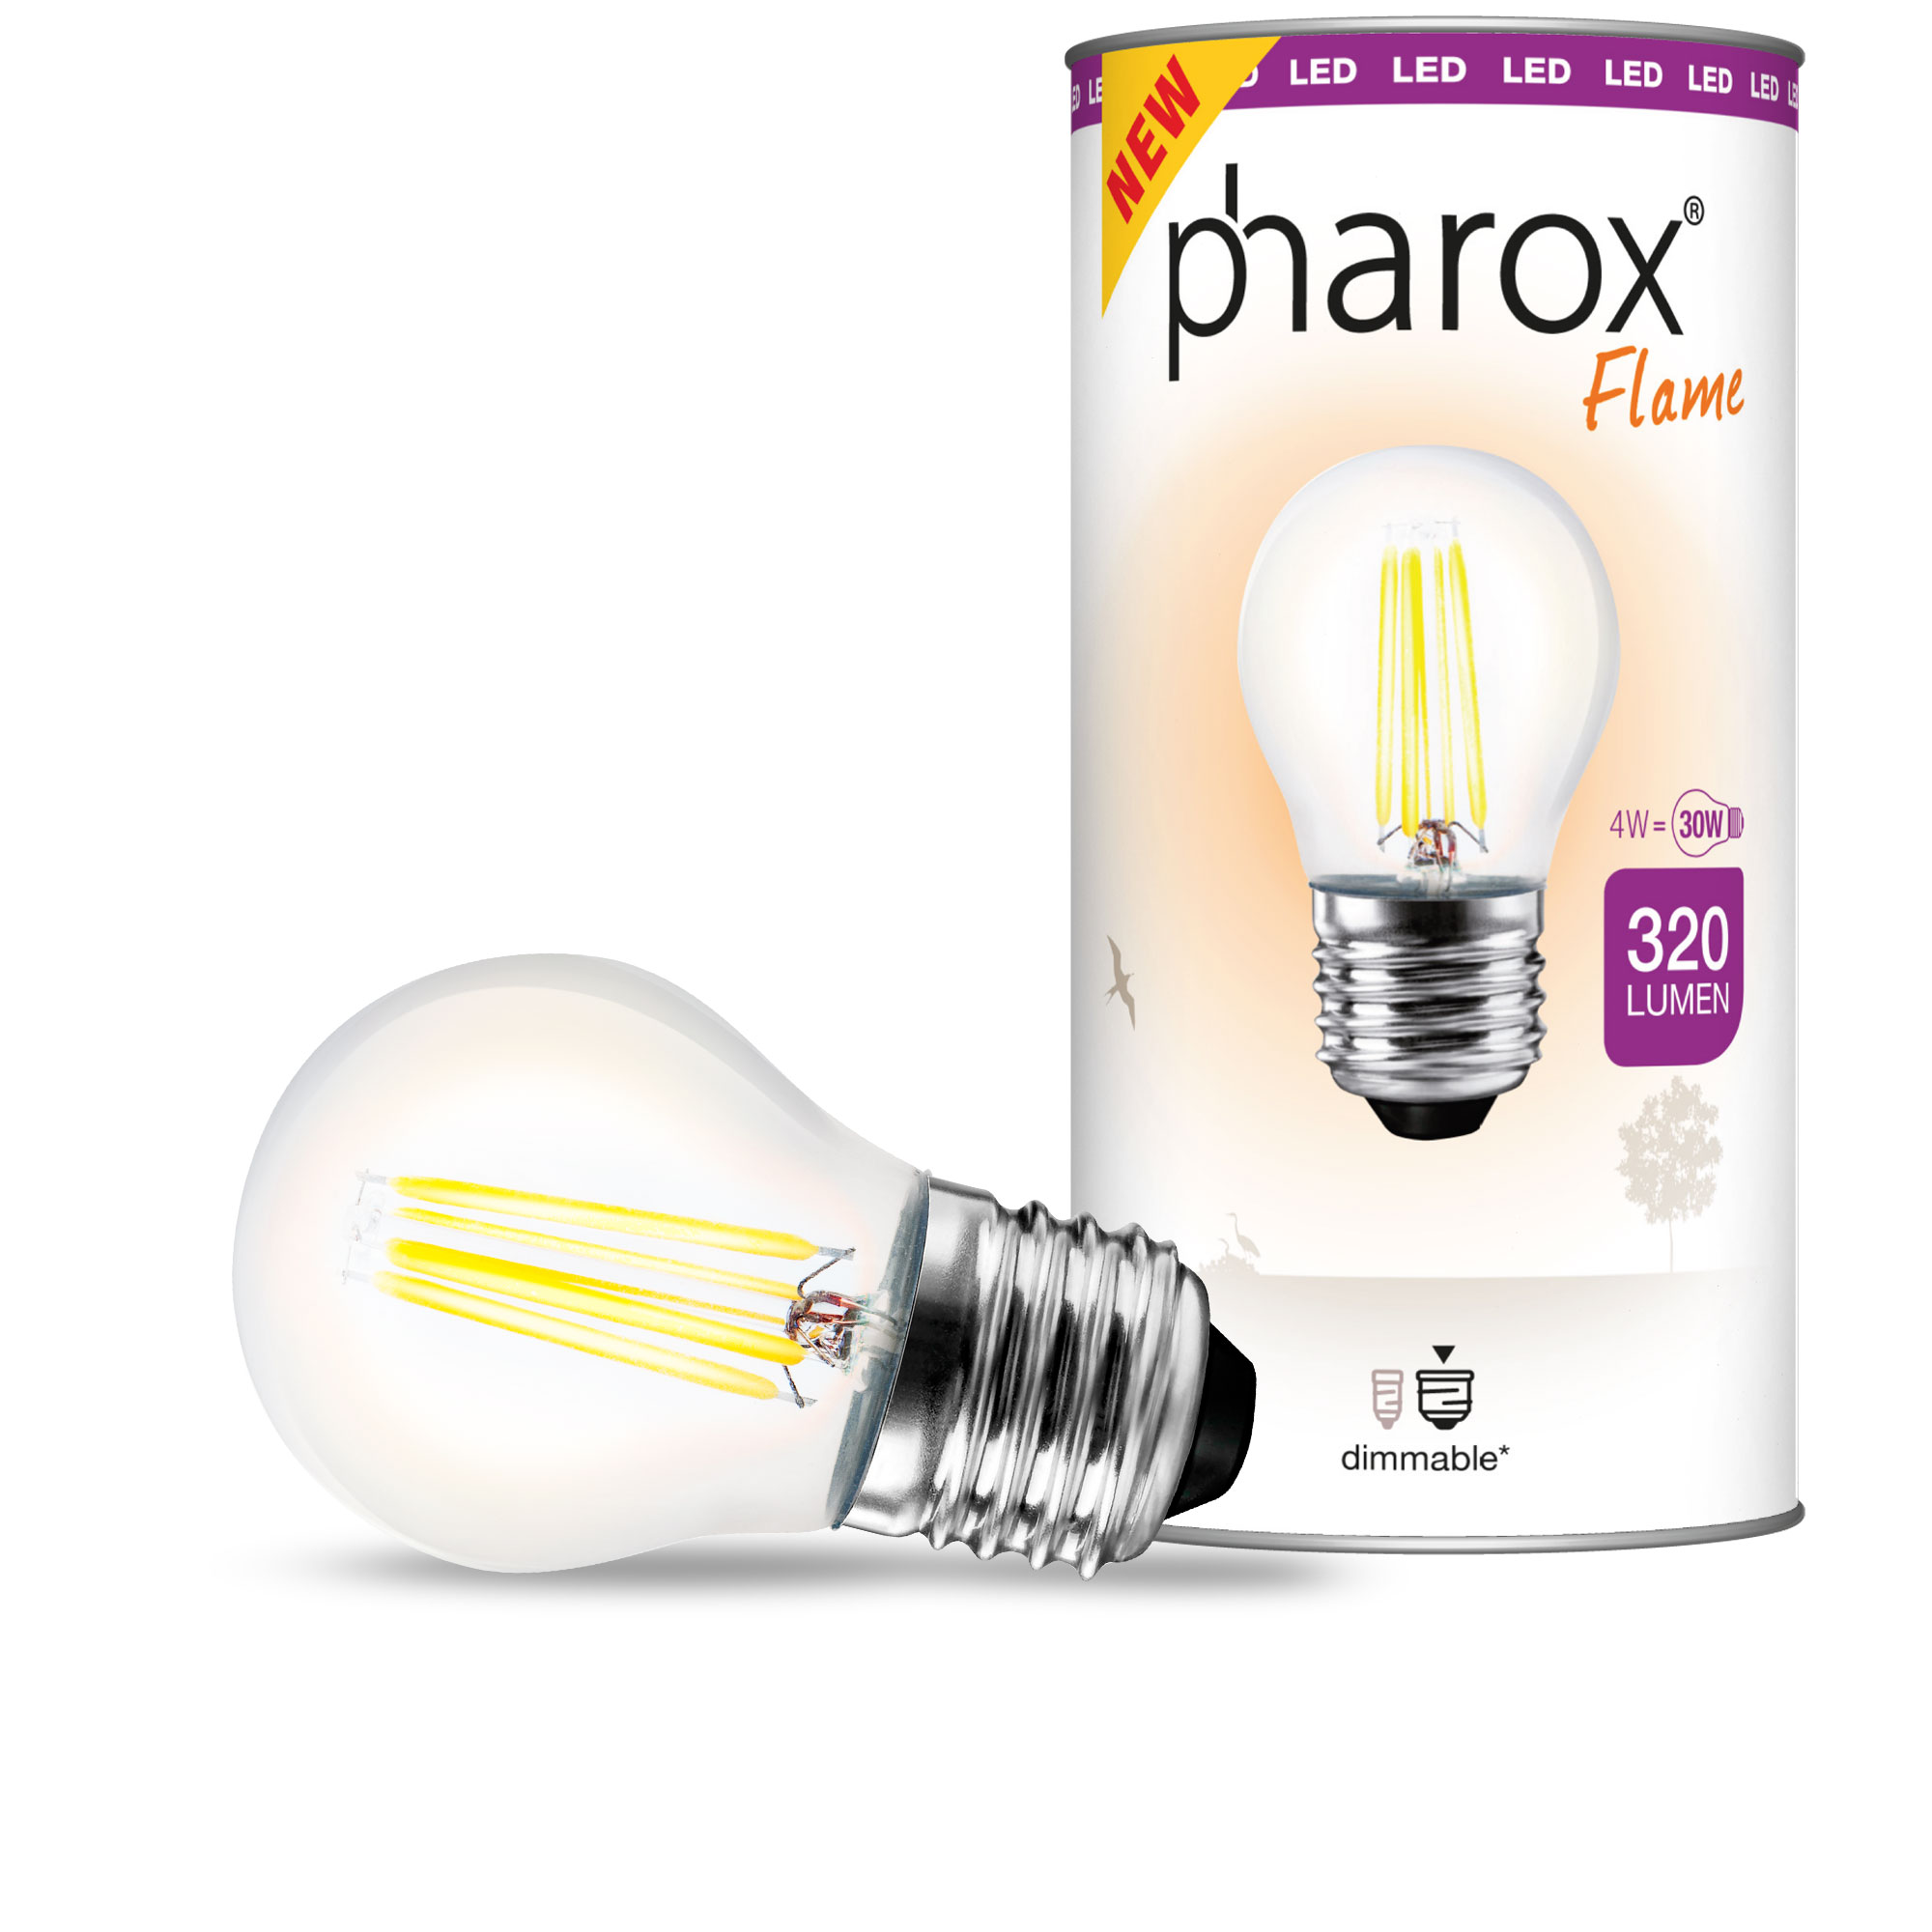 LED kuličková lampa Pharox čirý plamen E27 4W 320 lumenů